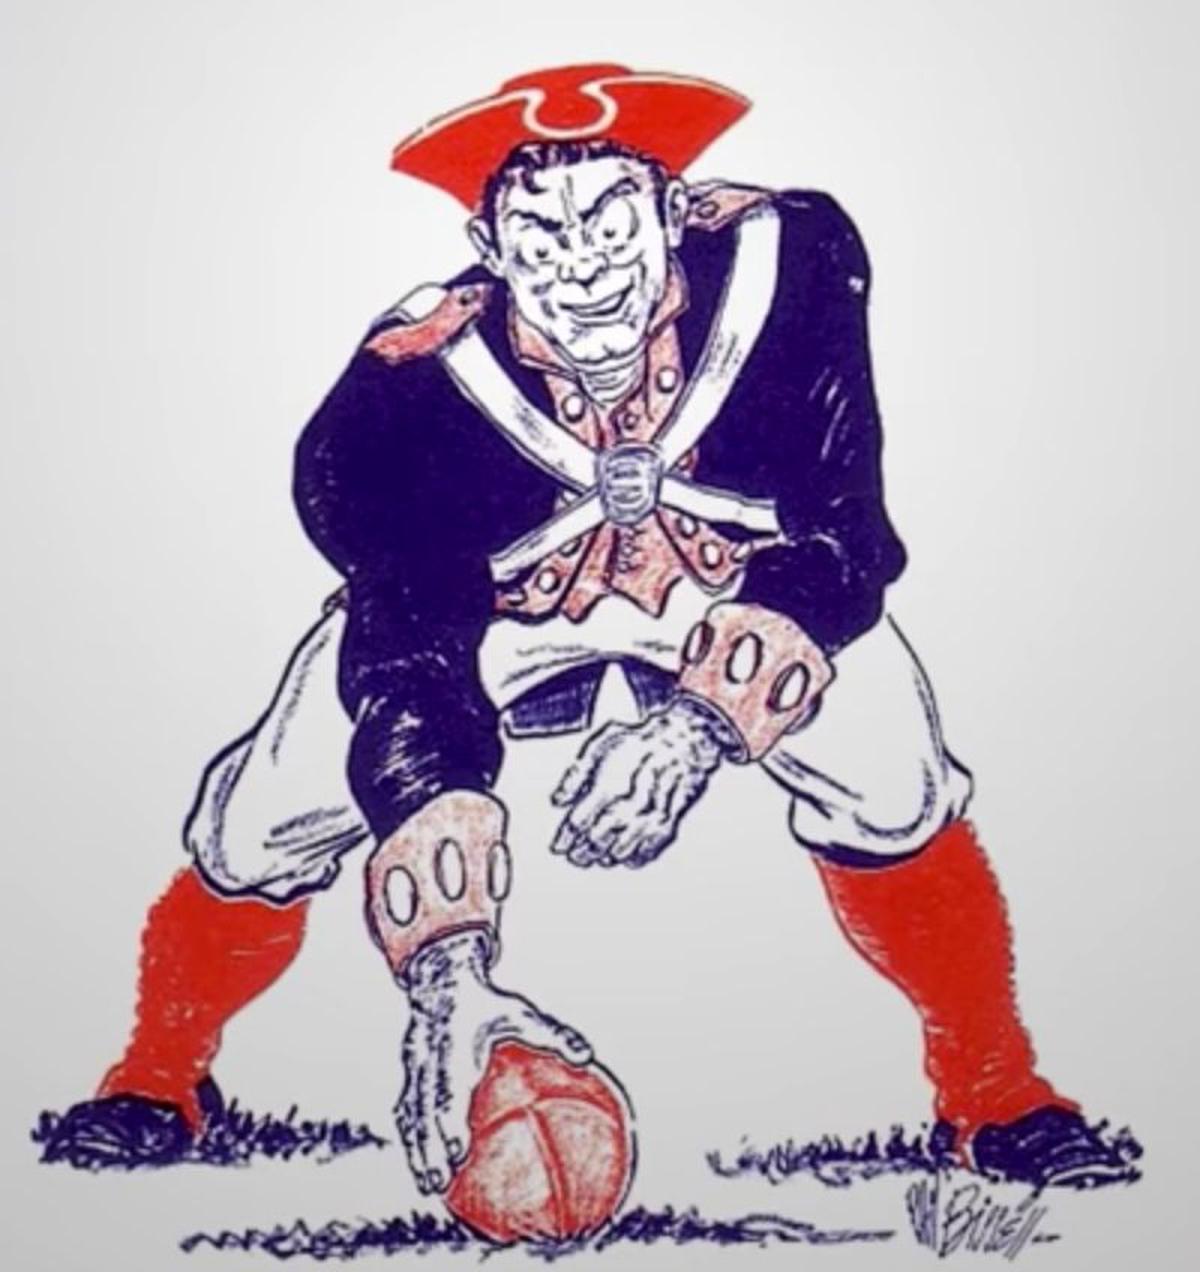 El primer logo de los New England Patriots | 1960
Imagen: @ShowmundialShow